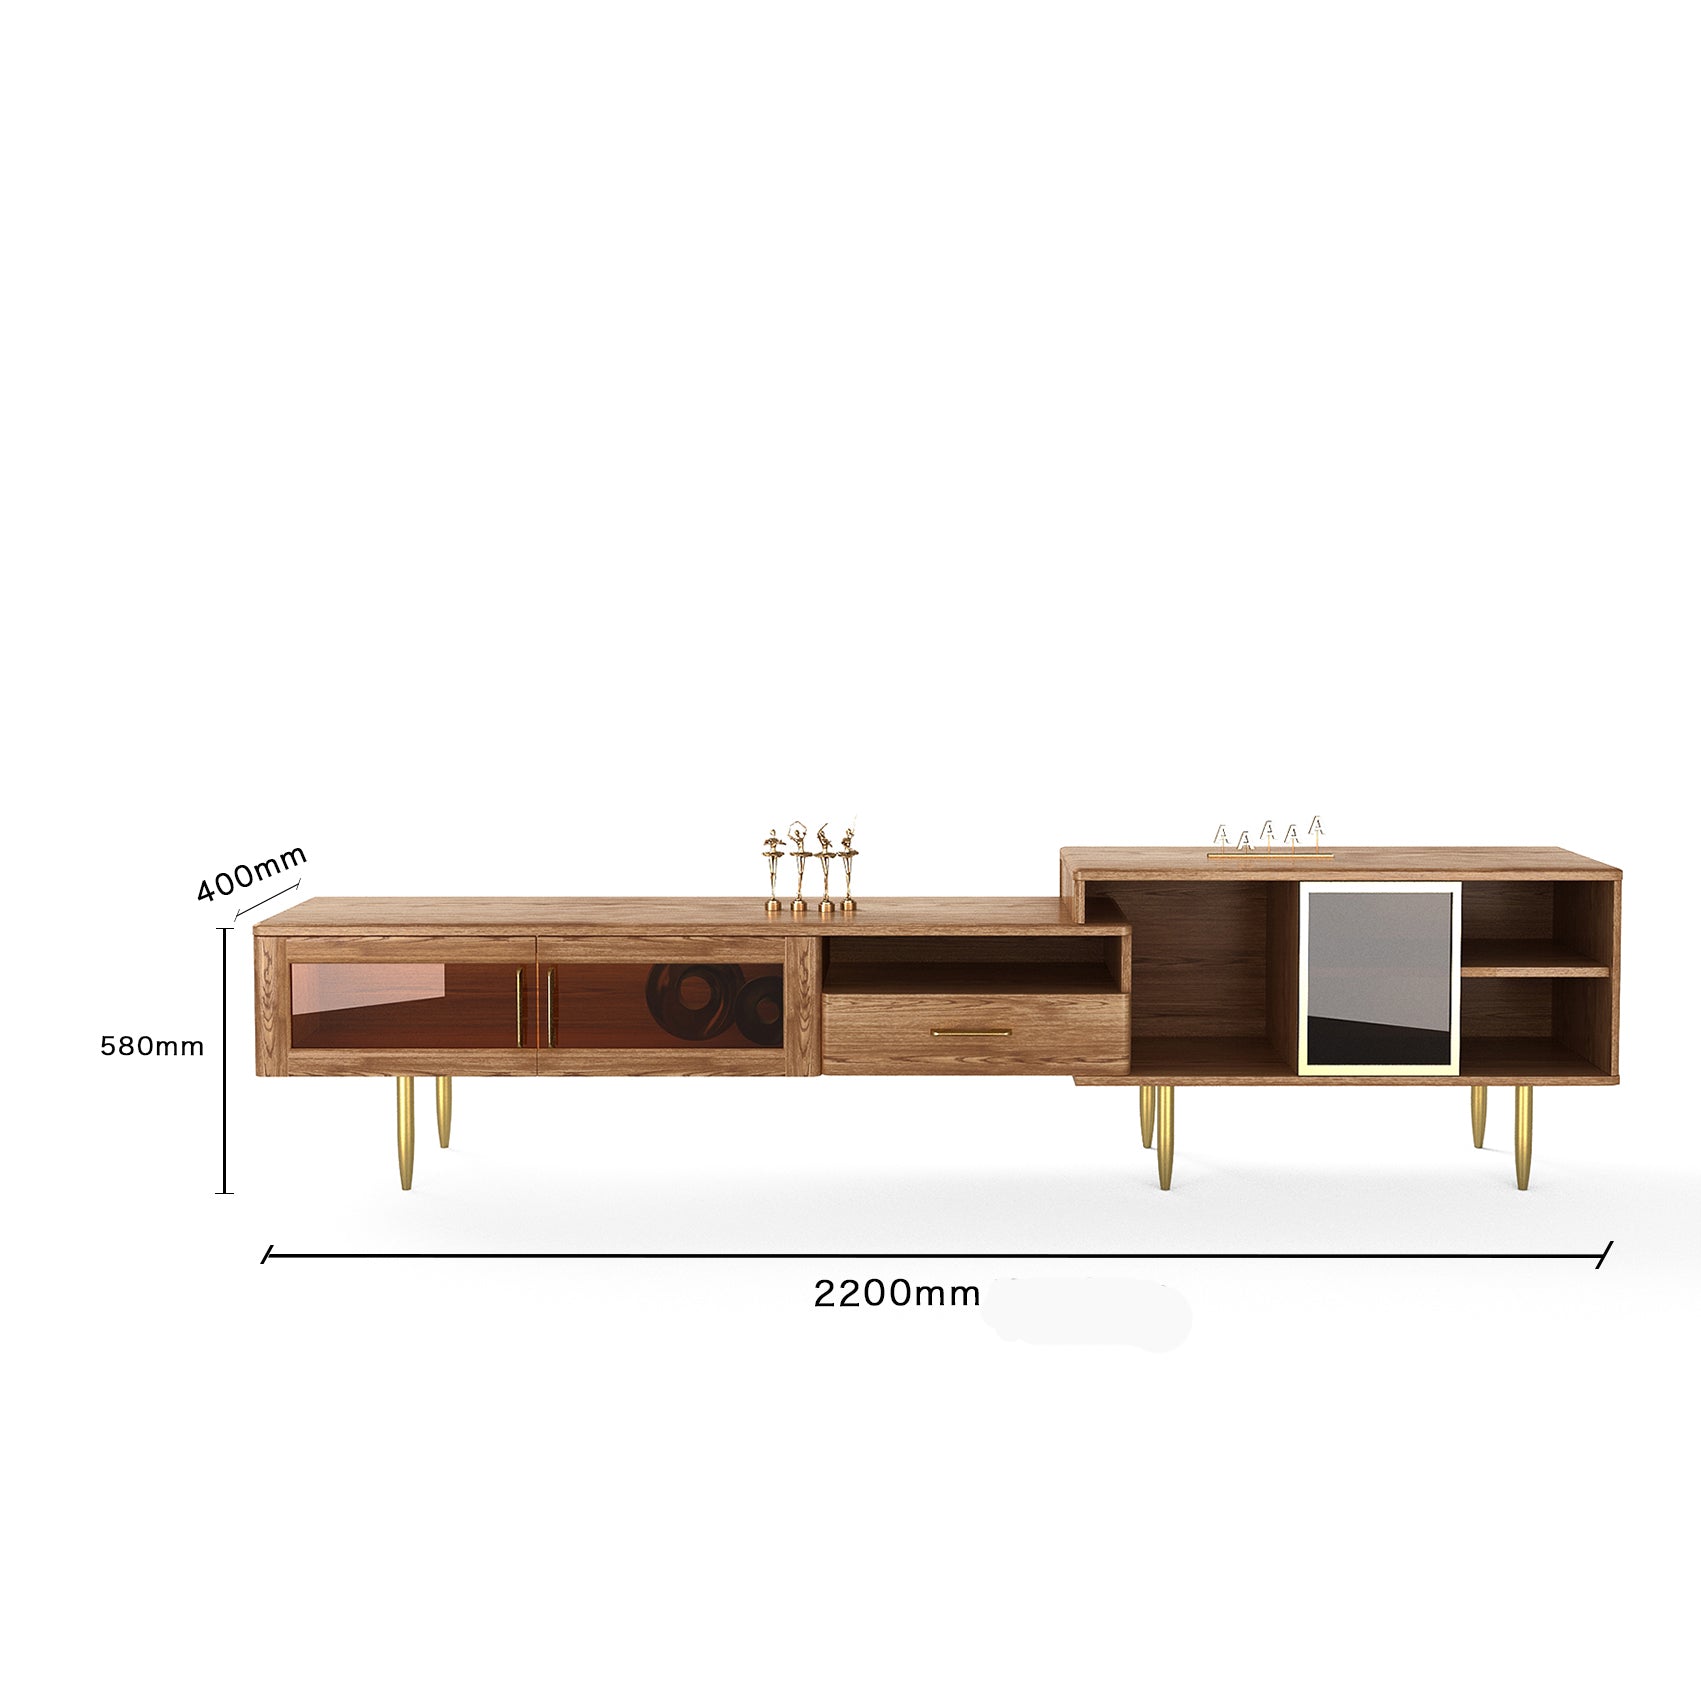 تسوق الان طاولة تلفزيون من الخشب تصميم انيق اونلاين | بيوت